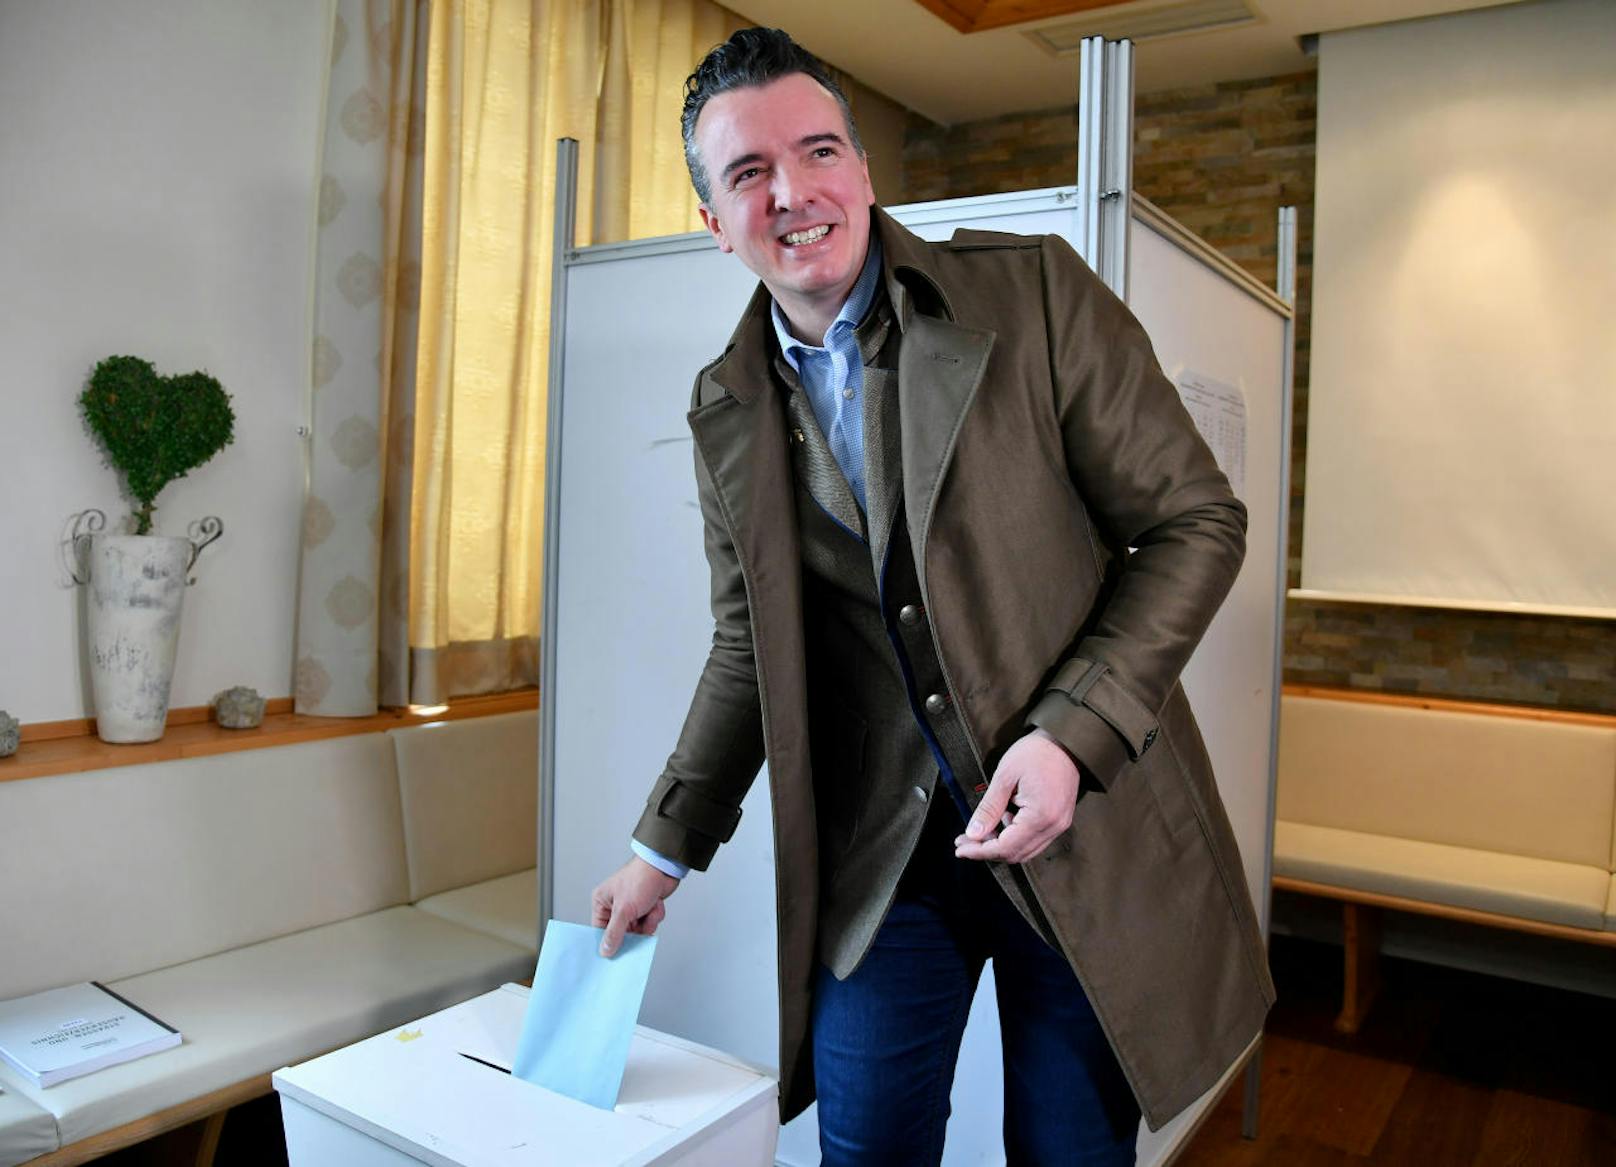 FPÖ-Spitzenkandidat Gernot Darmann im Rahmen seiner Stimmabgabe zur Landtagswahl in Kärnten am Sonntag, 4. Februar 2018, in Klagenfurt.